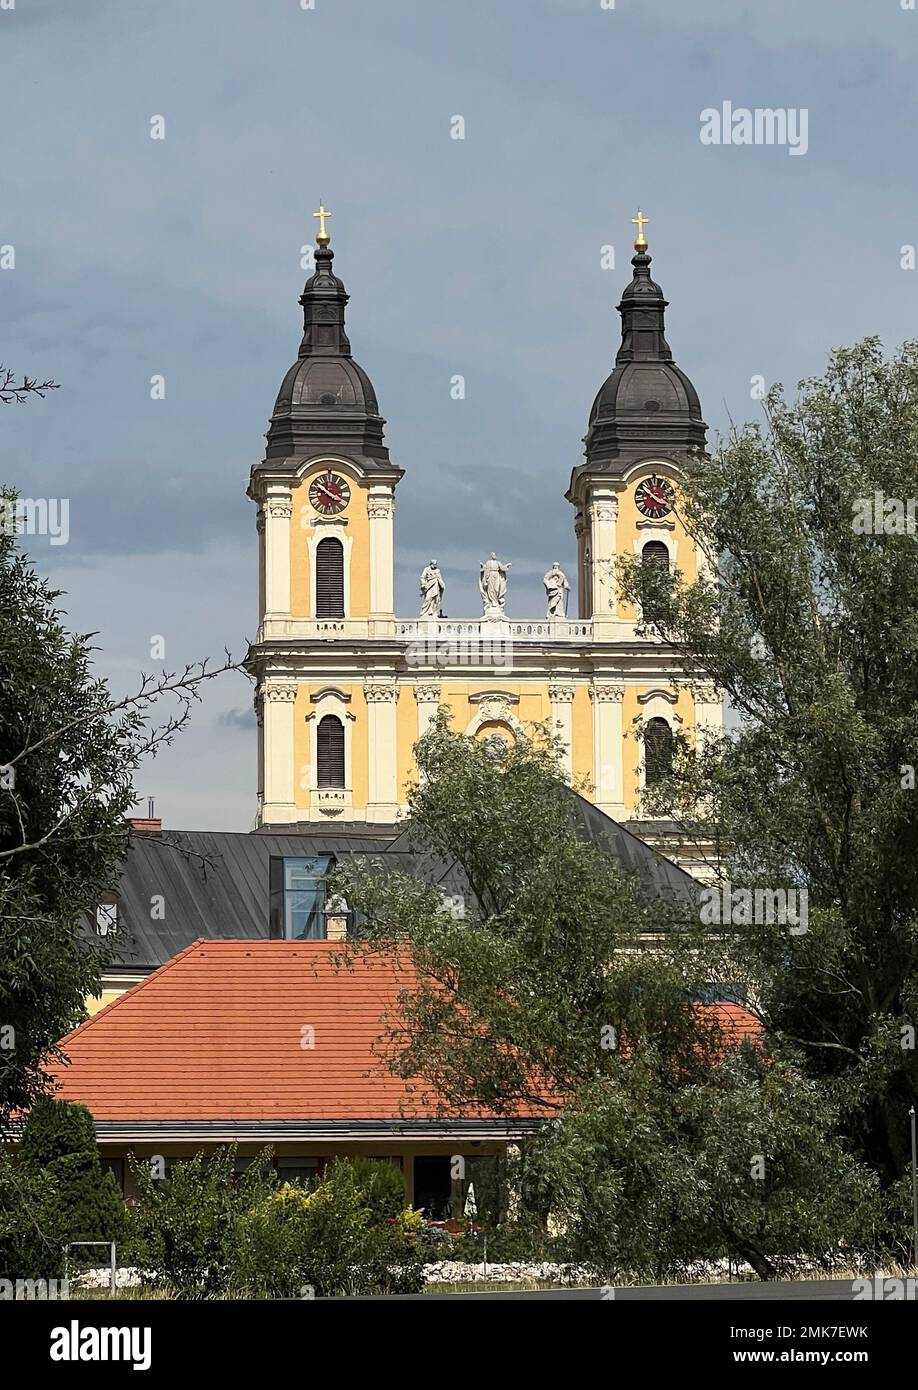 Des tours jumelles avec horloges et croix sont vues à l'Assomption de l'église ou de la cathédrale catholique Marie dans le village de Kalocsa en Hongrie. Banque D'Images